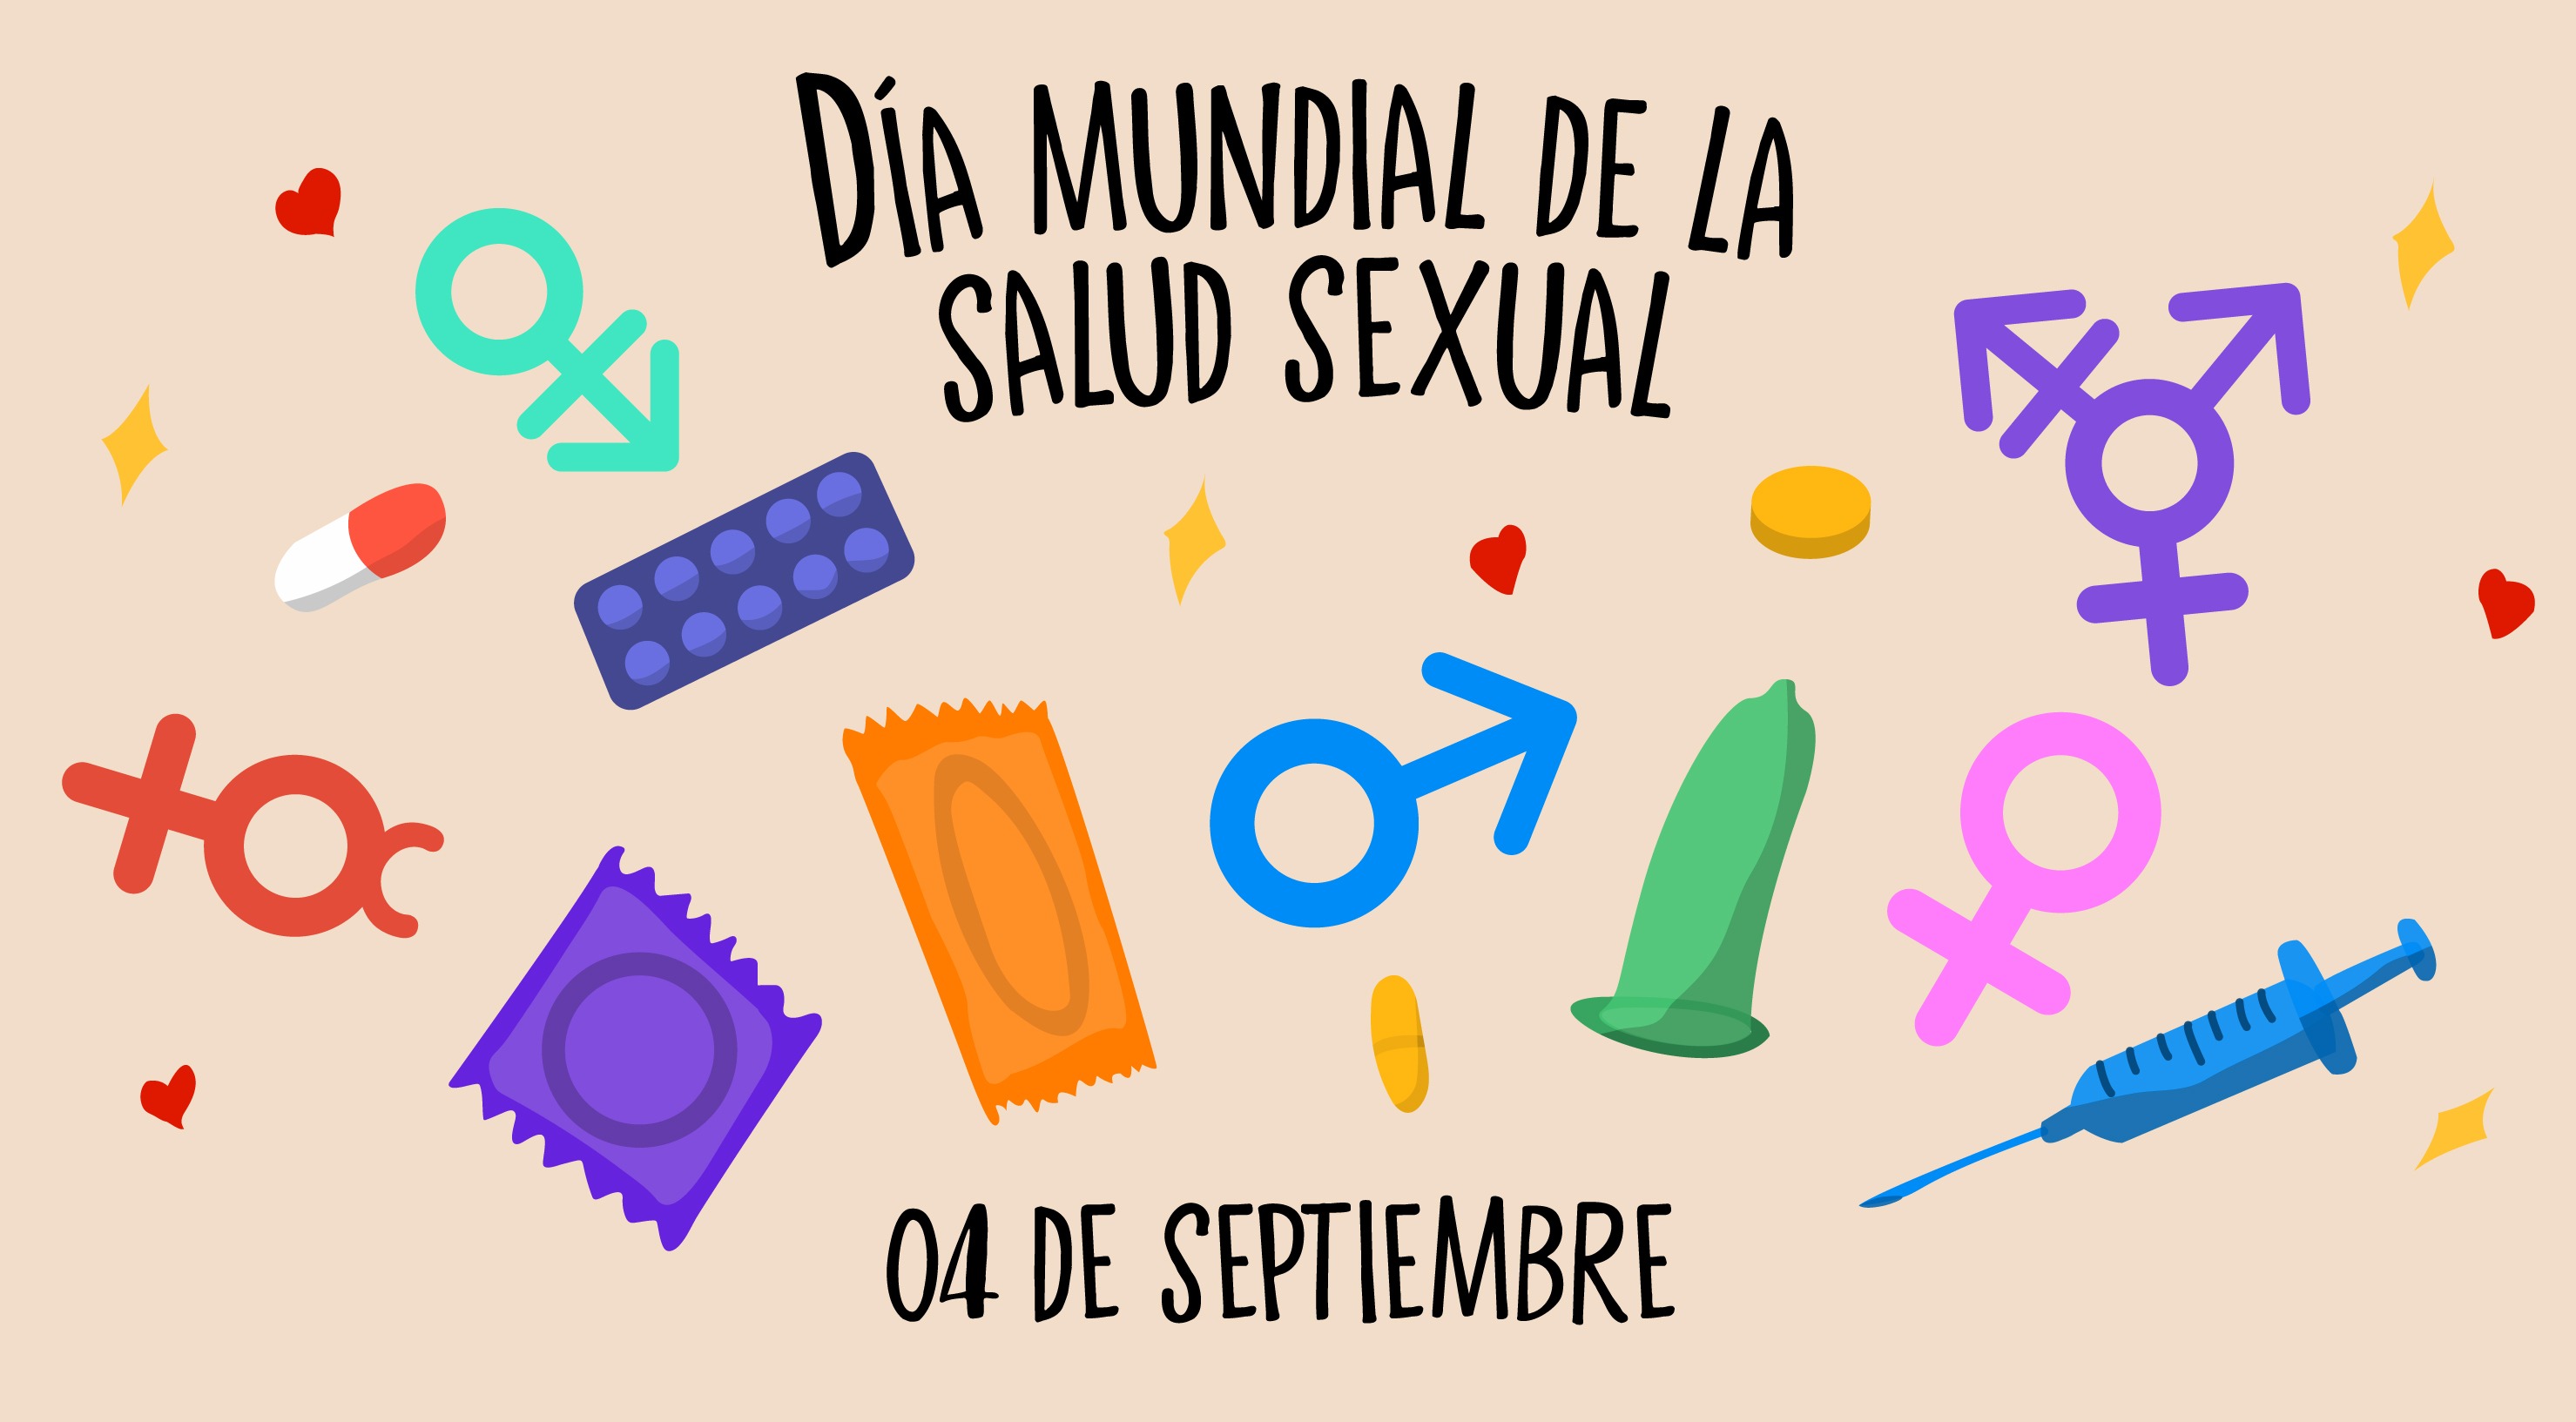 4 de septiembre. Día Mundial de la Salud Sexual